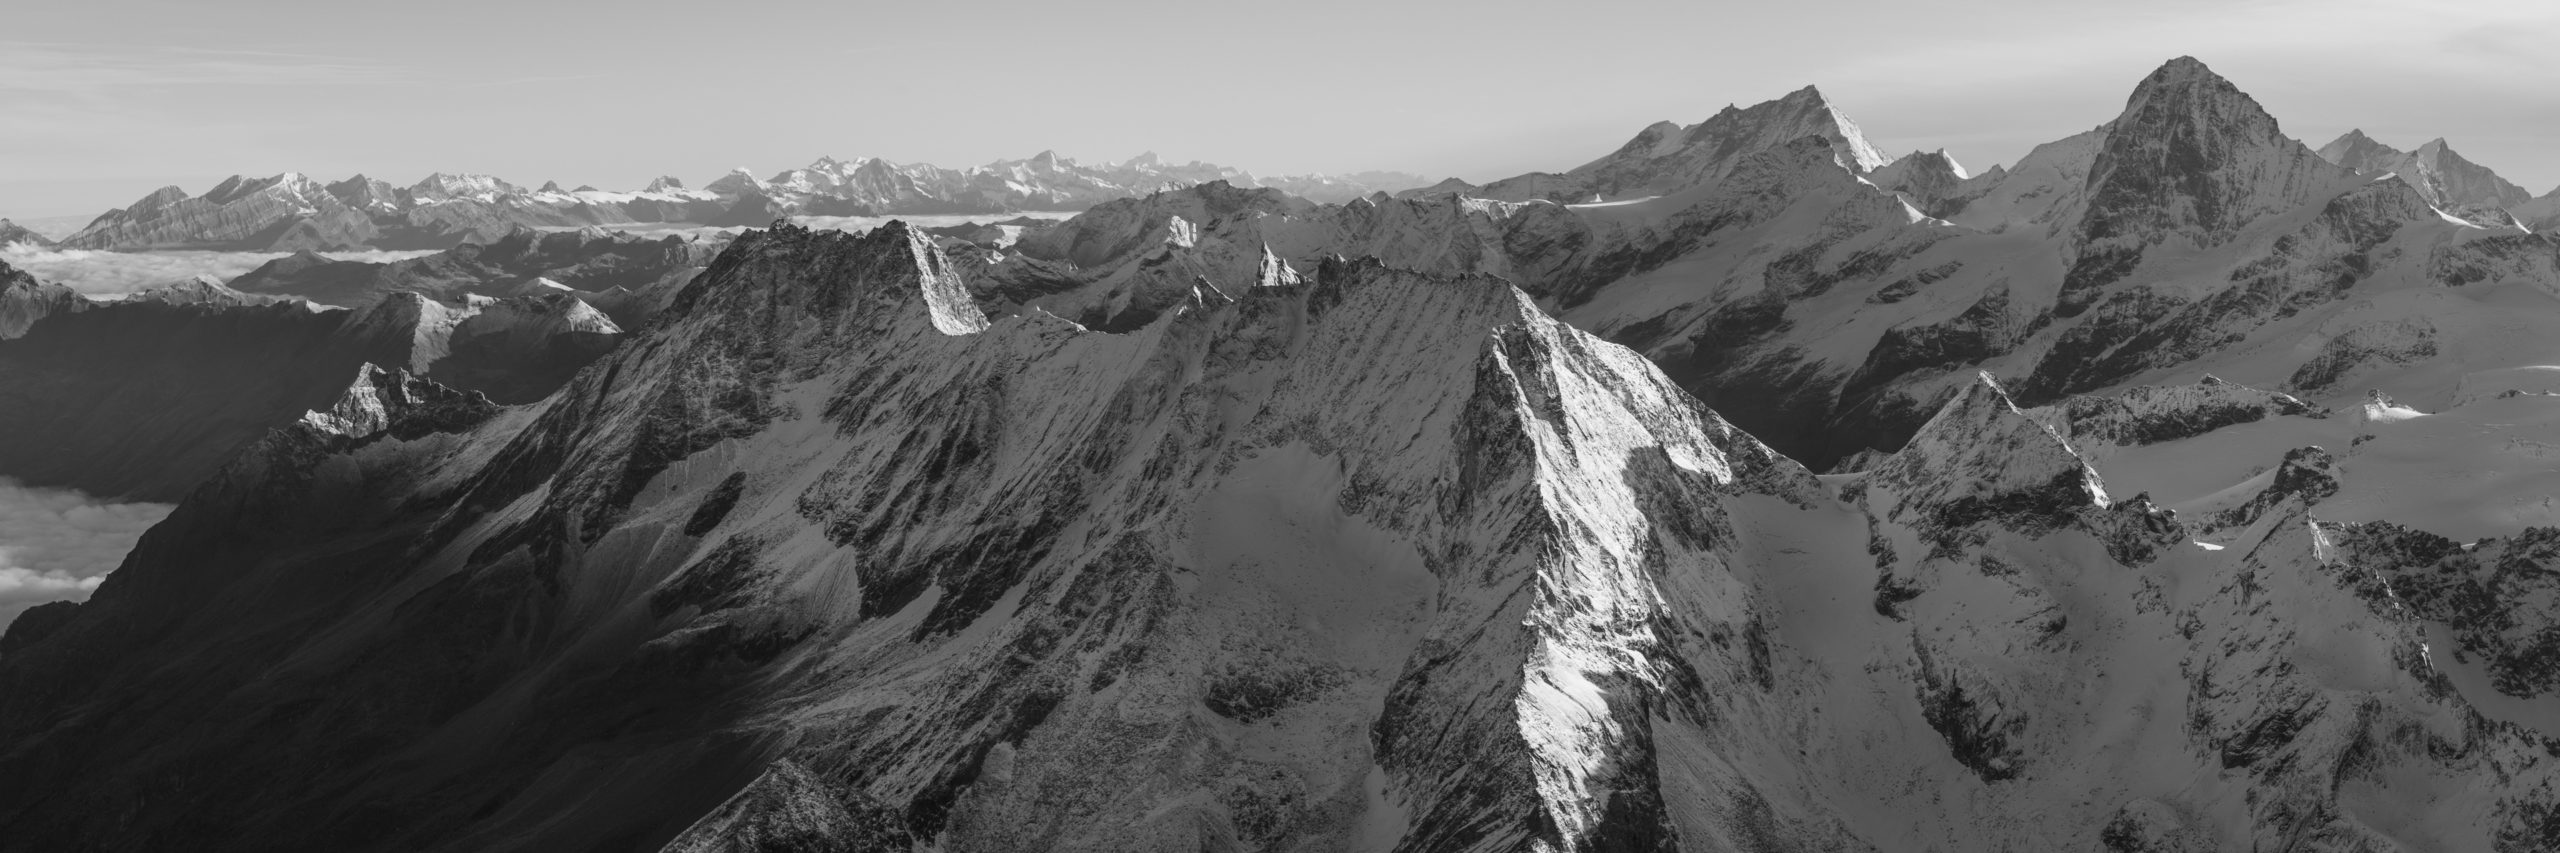 Vue panoramique noir et blanc du massif montagneux des Alpes Suisses Bernoises et Valaisannes